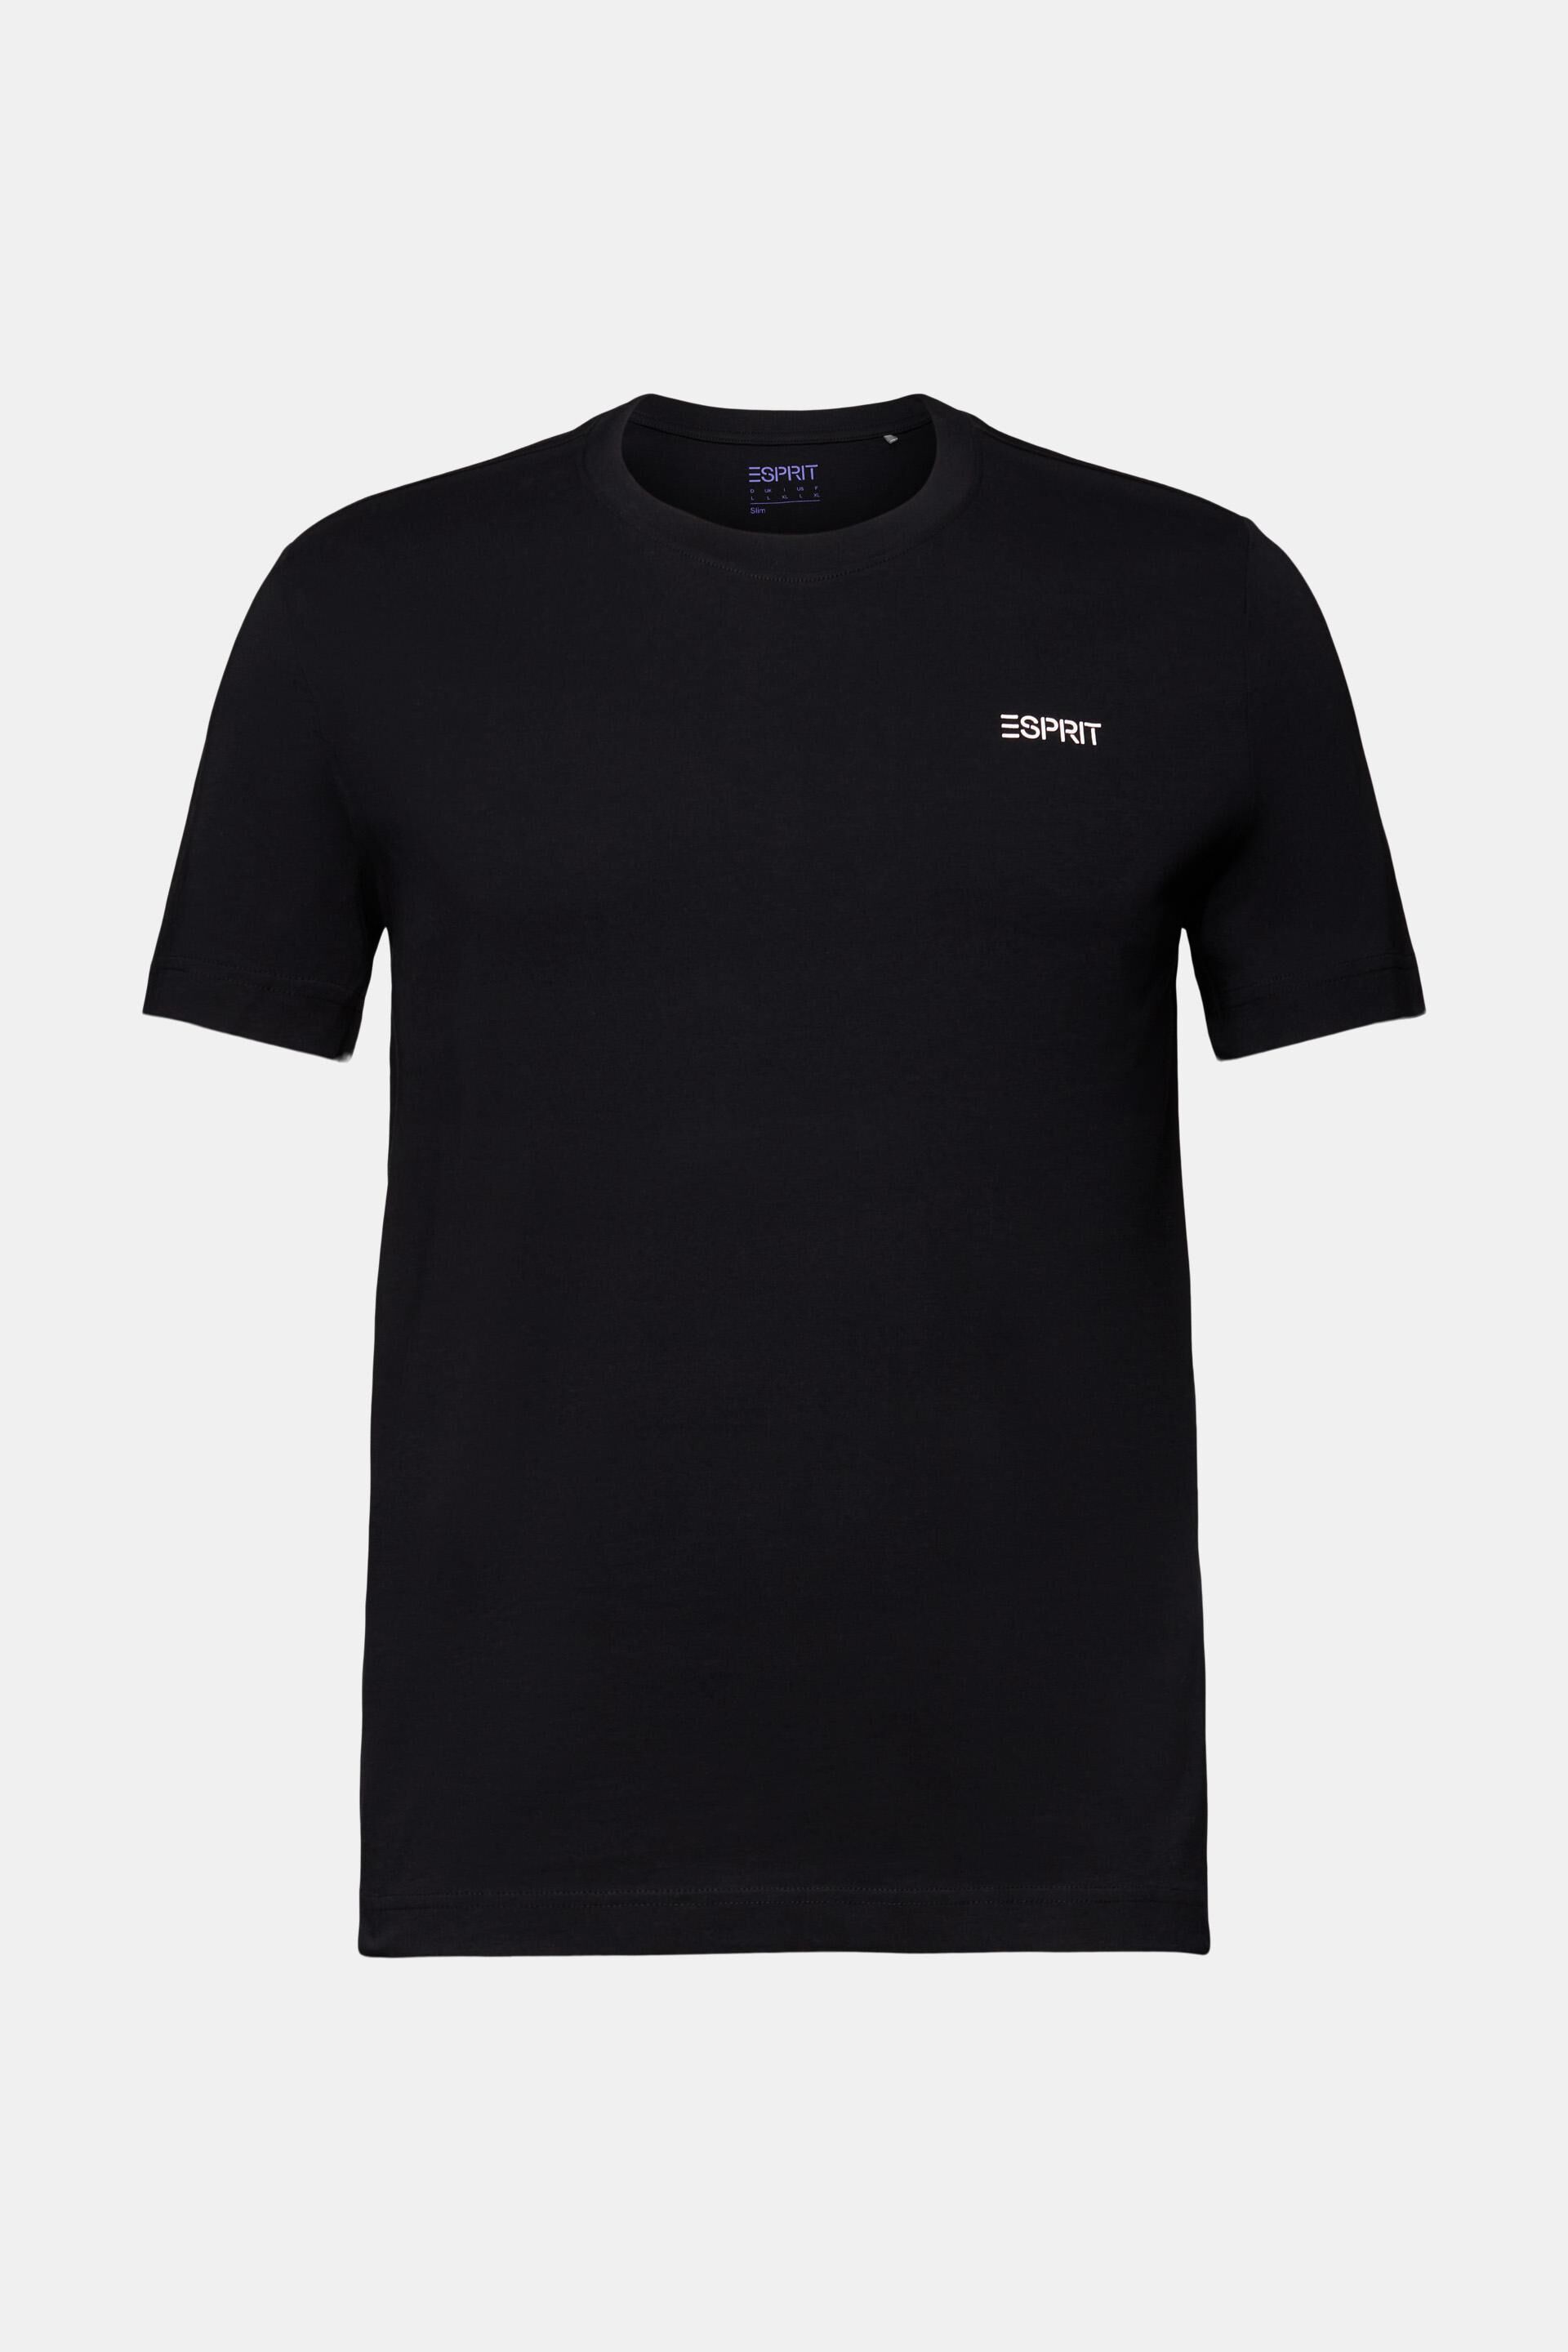 ESPRIT - Logo Cotton Jersey T-Shirt at our online shop